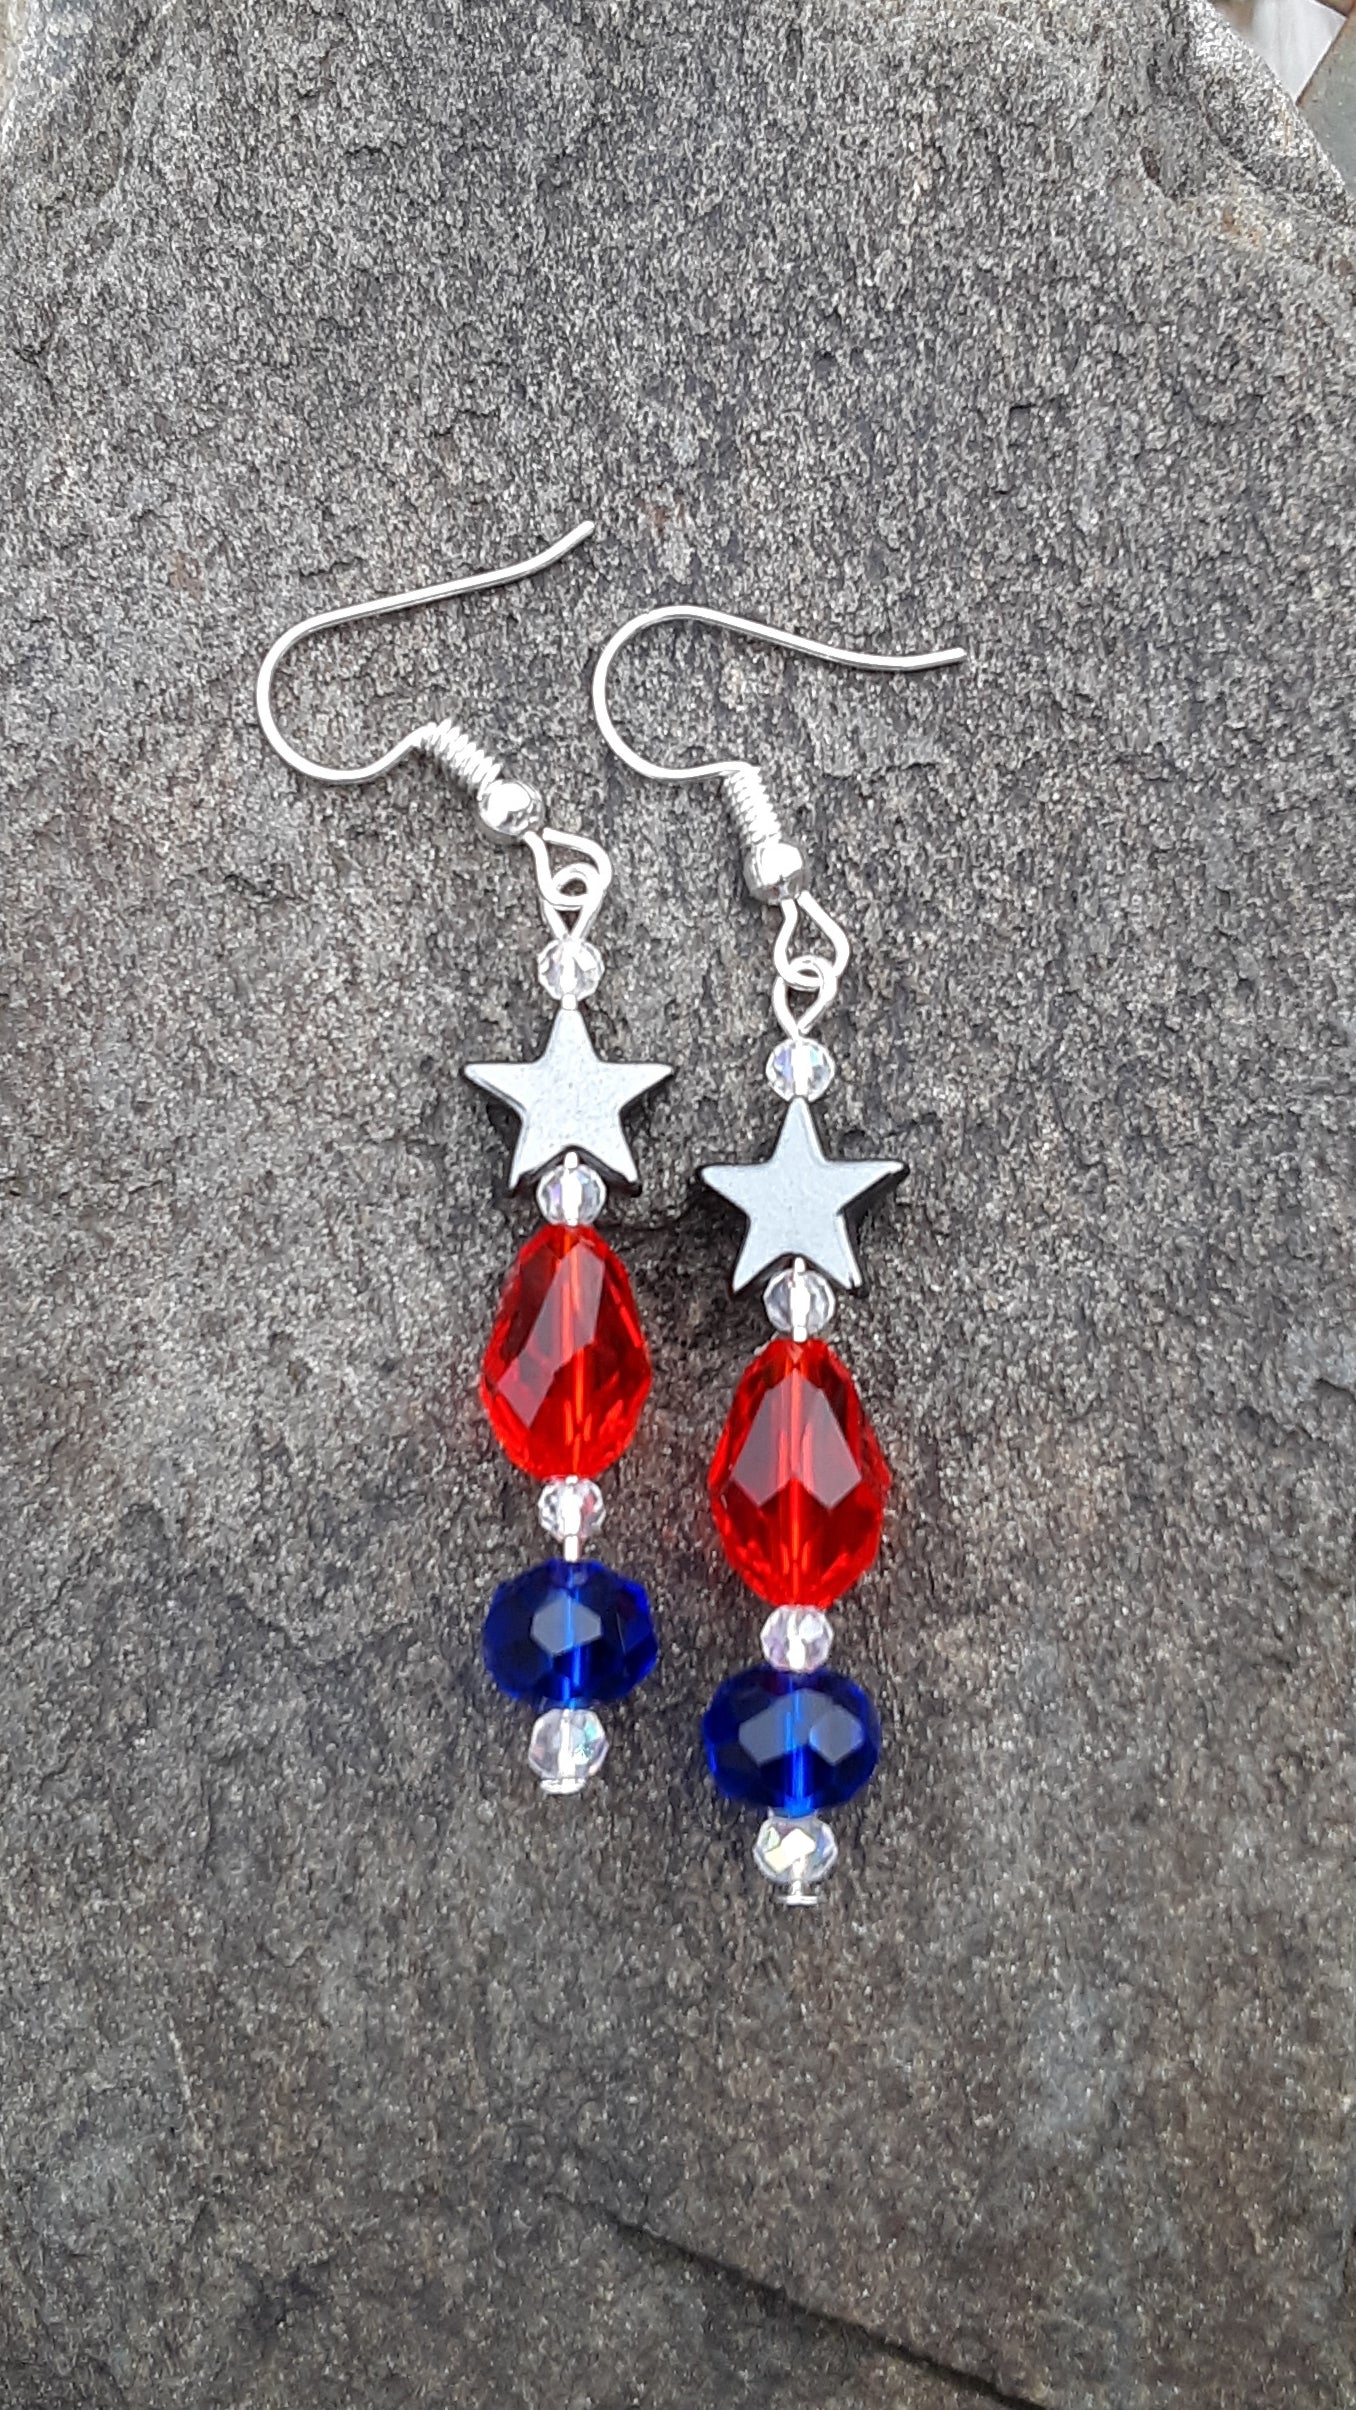 Star Spangled sparkler earrings